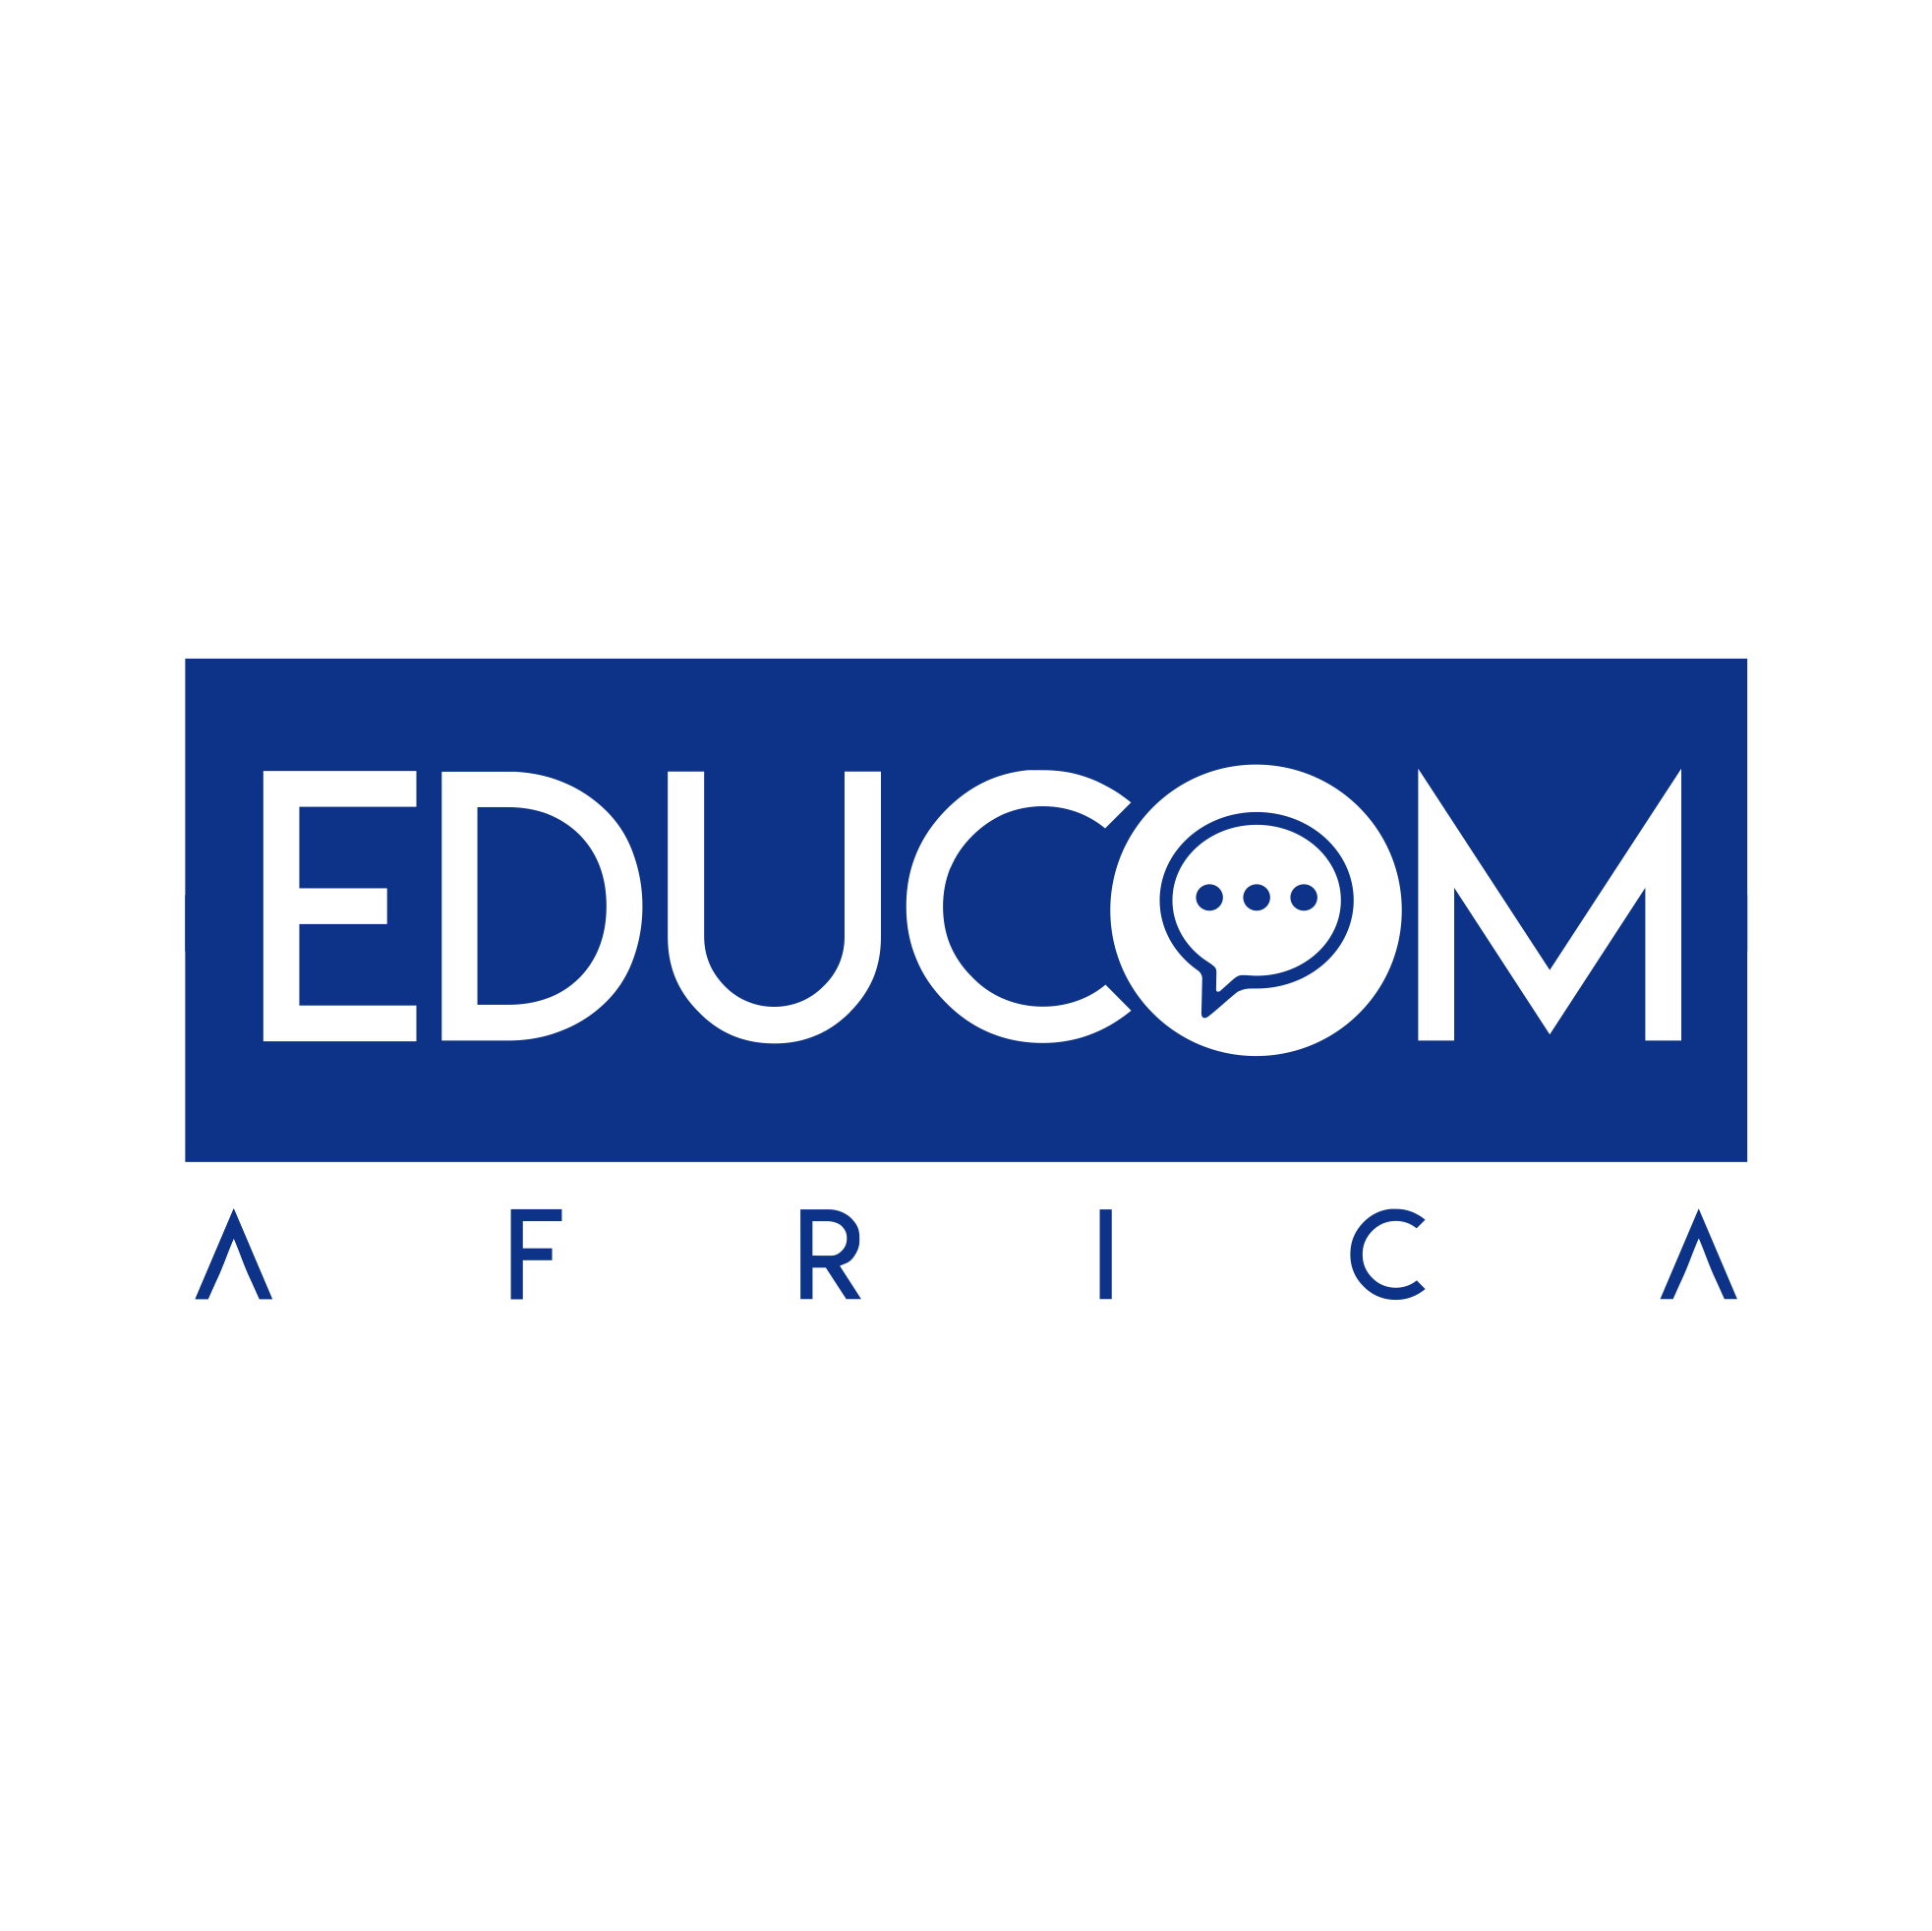 Educom Africa site logo